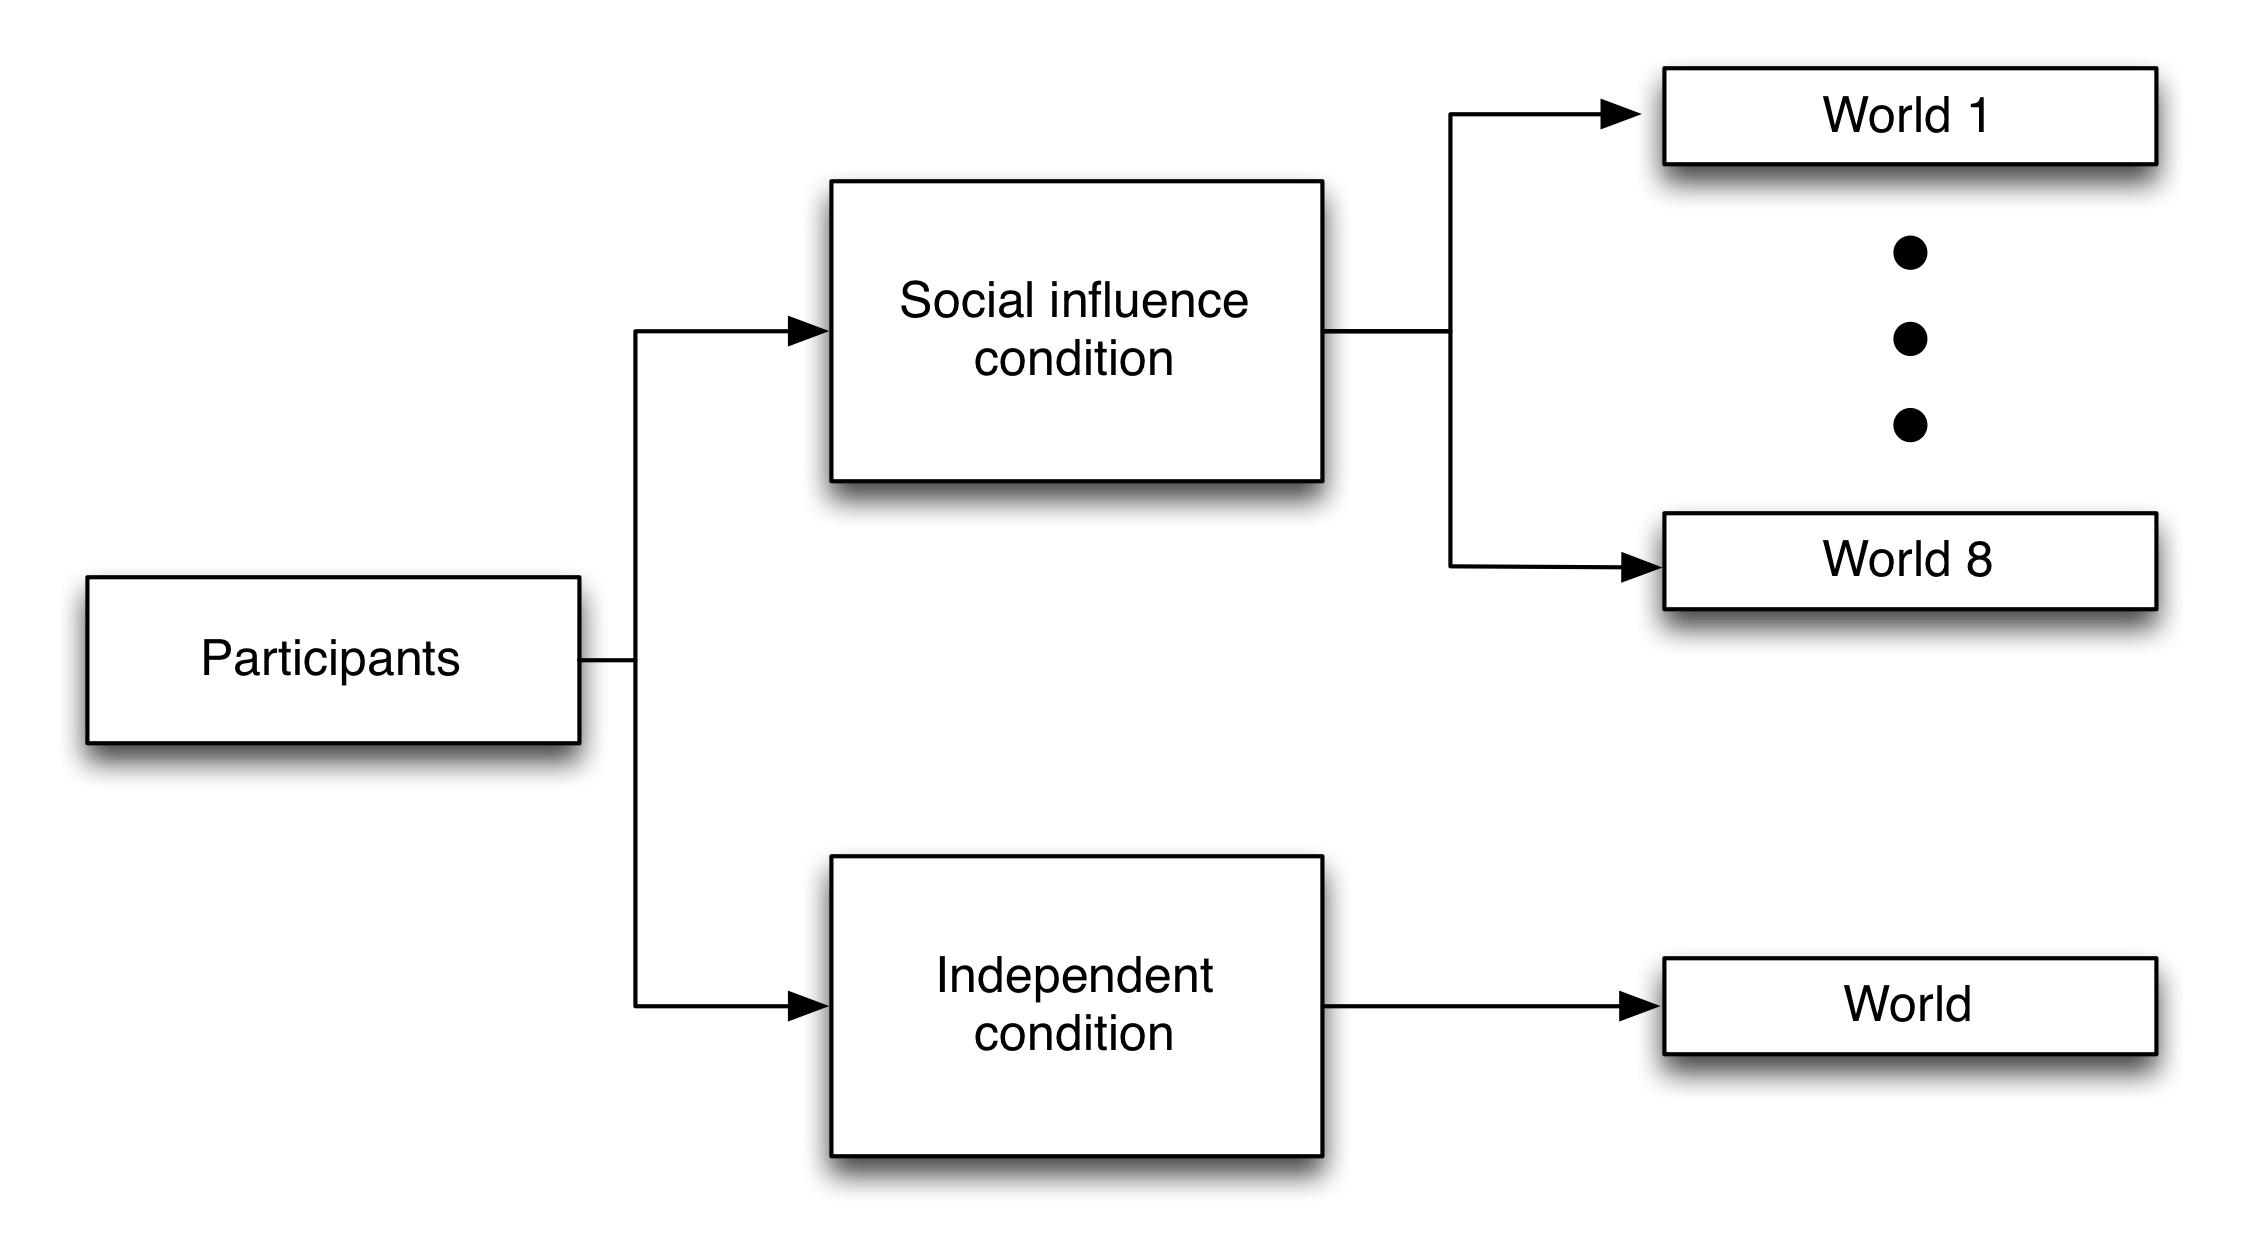 चित्रा 4.21: म्यूजिकलैब प्रयोगों के लिए प्रायोगिक डिजाइन (साल्ग्निक, डोड्स, और वाट्स 2006)। प्रतिभागियों को यादृच्छिक रूप से दो शर्तों में से एक को सौंपा गया था: स्वतंत्र और सामाजिक प्रभाव। स्वतंत्र हालत में प्रतिभागियों ने अन्य विकल्पों के बारे में किसी भी जानकारी के बिना अपने विकल्पों को बनाया। सामाजिक प्रभाव की स्थिति में प्रतिभागियों को यादृच्छिक रूप से आठ समांतर दुनिया में से एक को सौंपा गया था, जहां वे लोकप्रियता को देख सकते थे-जैसा कि पिछले प्रतिभागियों के डाउनलोड द्वारा मापा गया था- उनके गीत में प्रत्येक गीत के, लेकिन वे किसी भी जानकारी को नहीं देख पाए, और न ही उन्होंने यहां तक ​​कि किसी भी अन्य दुनिया के अस्तित्व के बारे में भी पता है। साल्ग्निक, डोड्स और वाट्स (2006) से अनुकूलित, आंकड़ा एस 1।